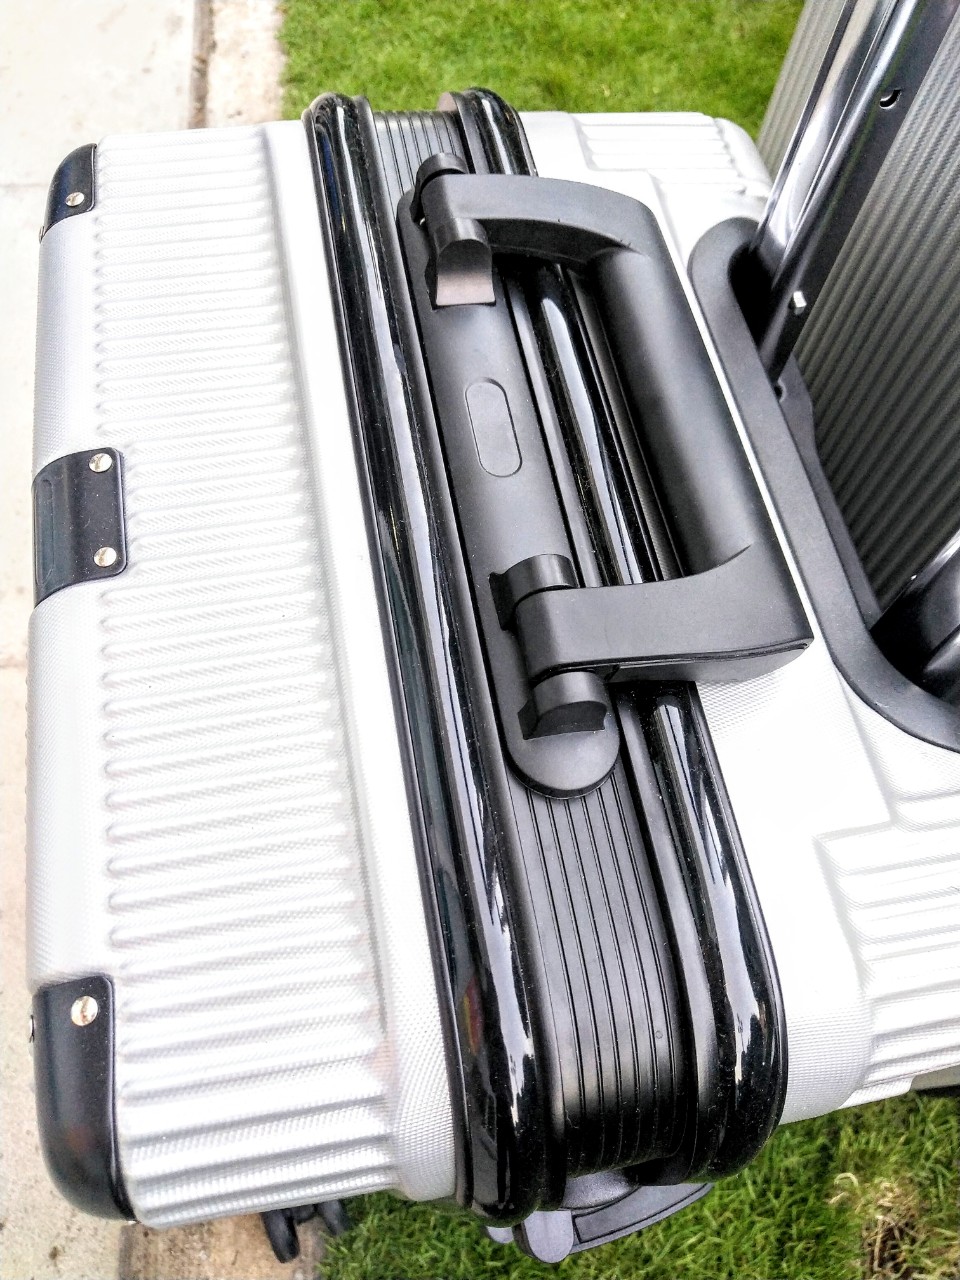 Vali du lịch khung nhôm khóa sập cao cấp chống bể vỡ bảo vệ hành lý tuyệt đối